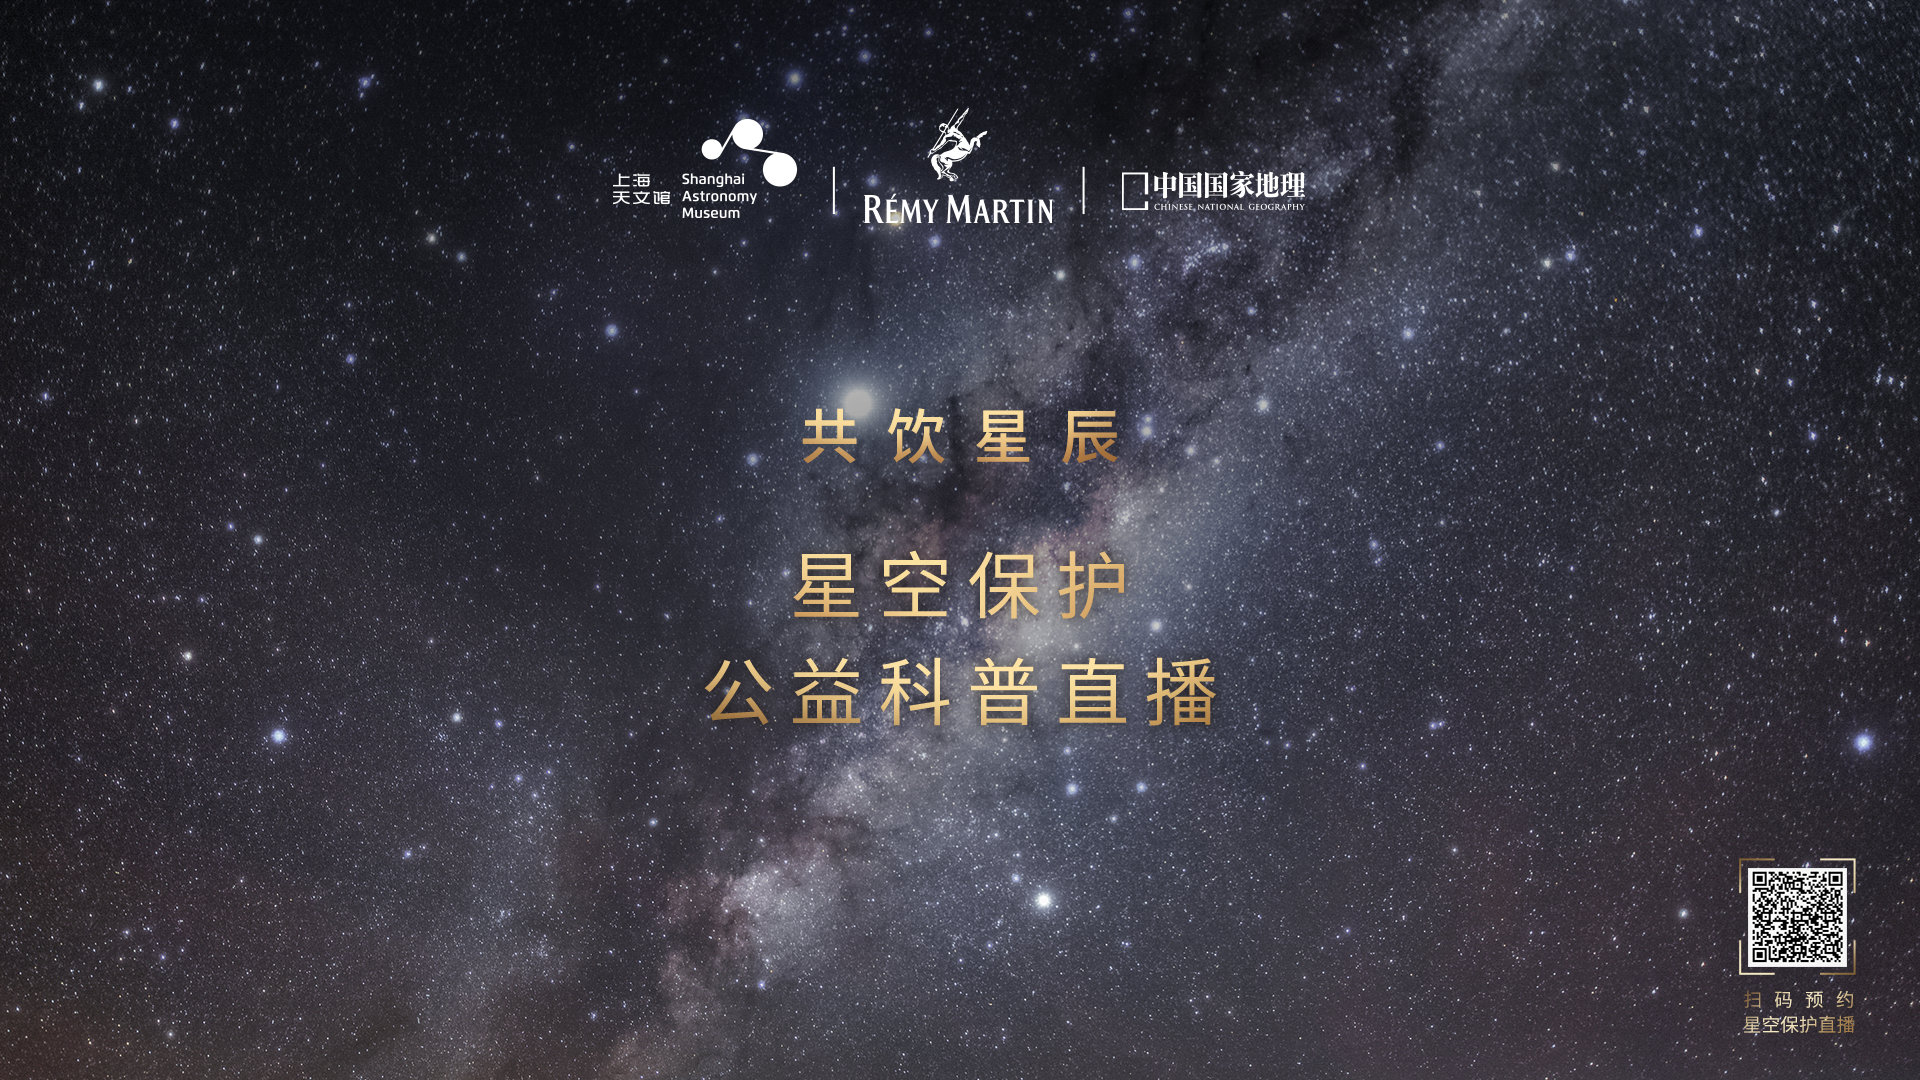 人头马 × 上海天文馆 × 中国国家地理邀你「共饮星辰」